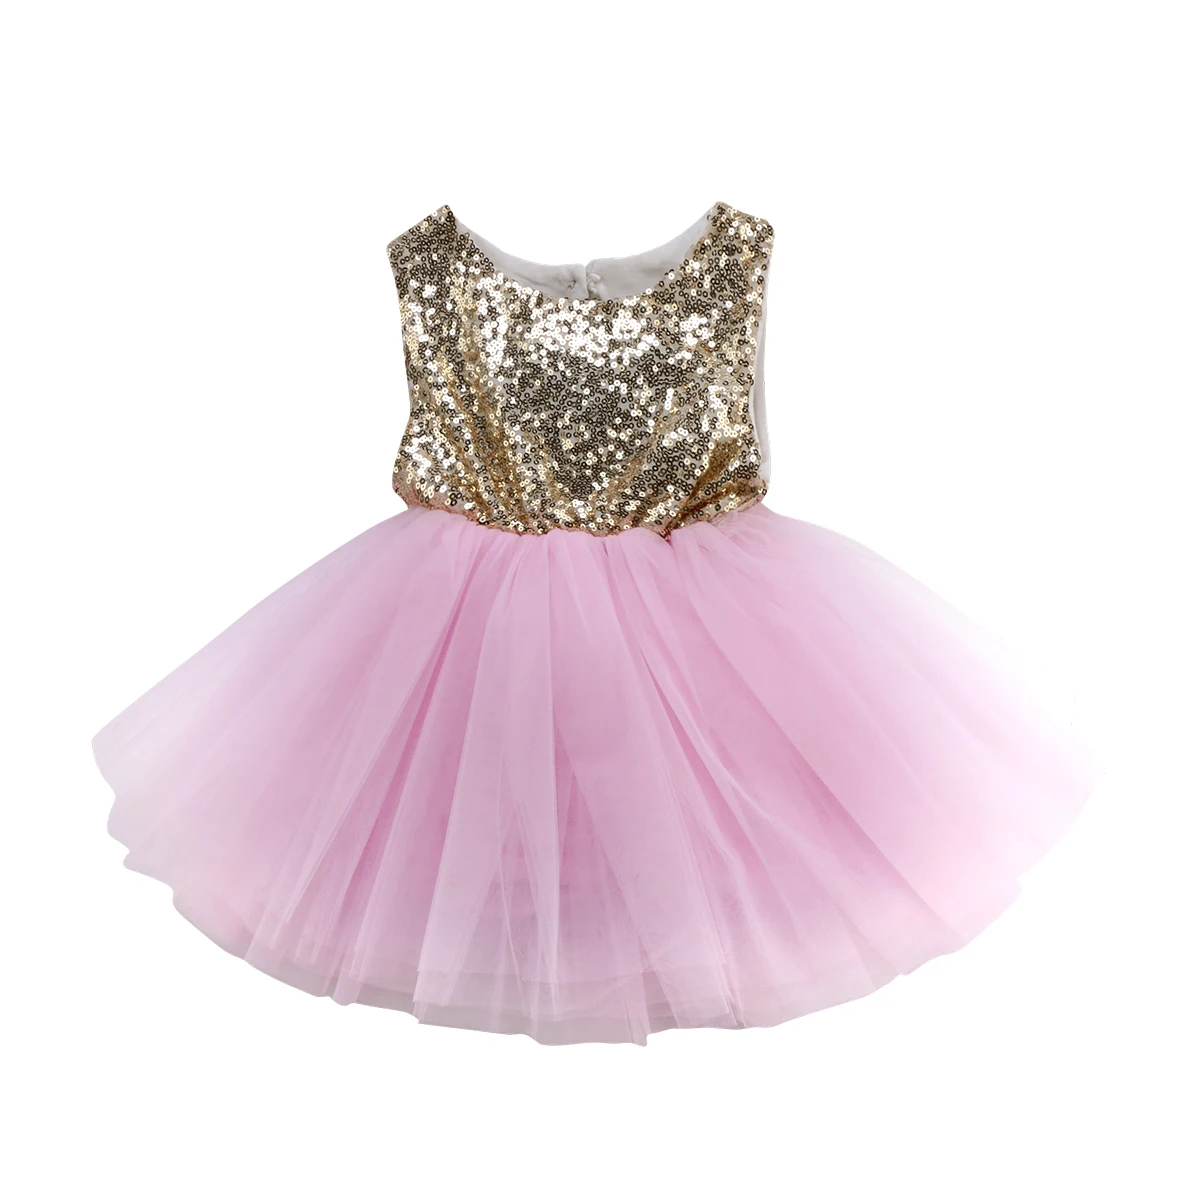 Бальное платье без рукавов с блестками и открытой спиной, доступно в 3 цветах, платье для маленьких девочек на первый день рождения, вечерние платья подружки невесты с юбкой-пачкой для малышей - Цвет: Розовый